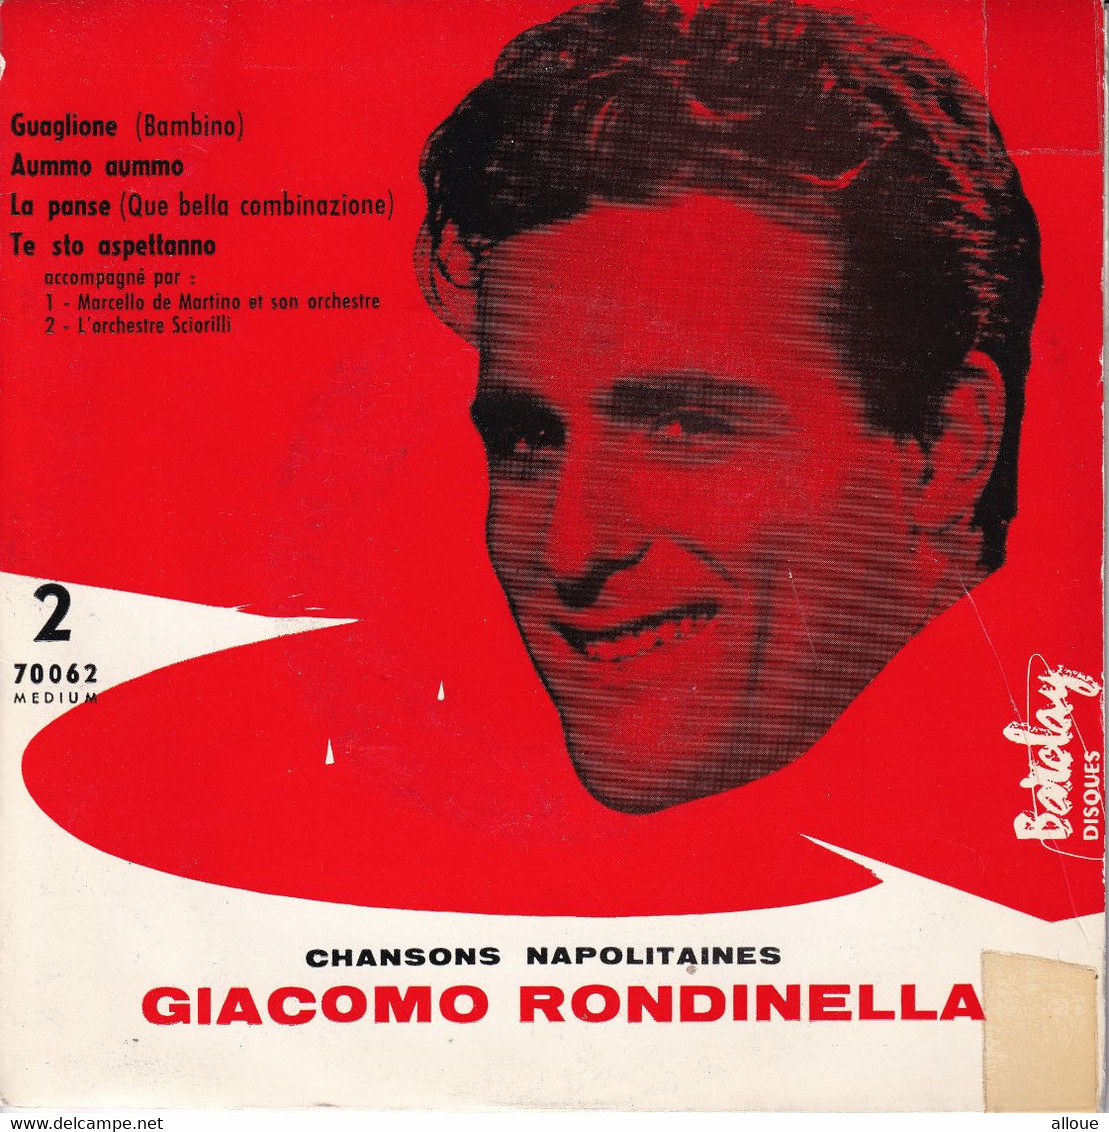 GIACOMO RONDINELLA - CHANSONS NAPOLITAINES - FR EP - GUAGLIONE ( BAMBINO) + 3 - Música Del Mundo